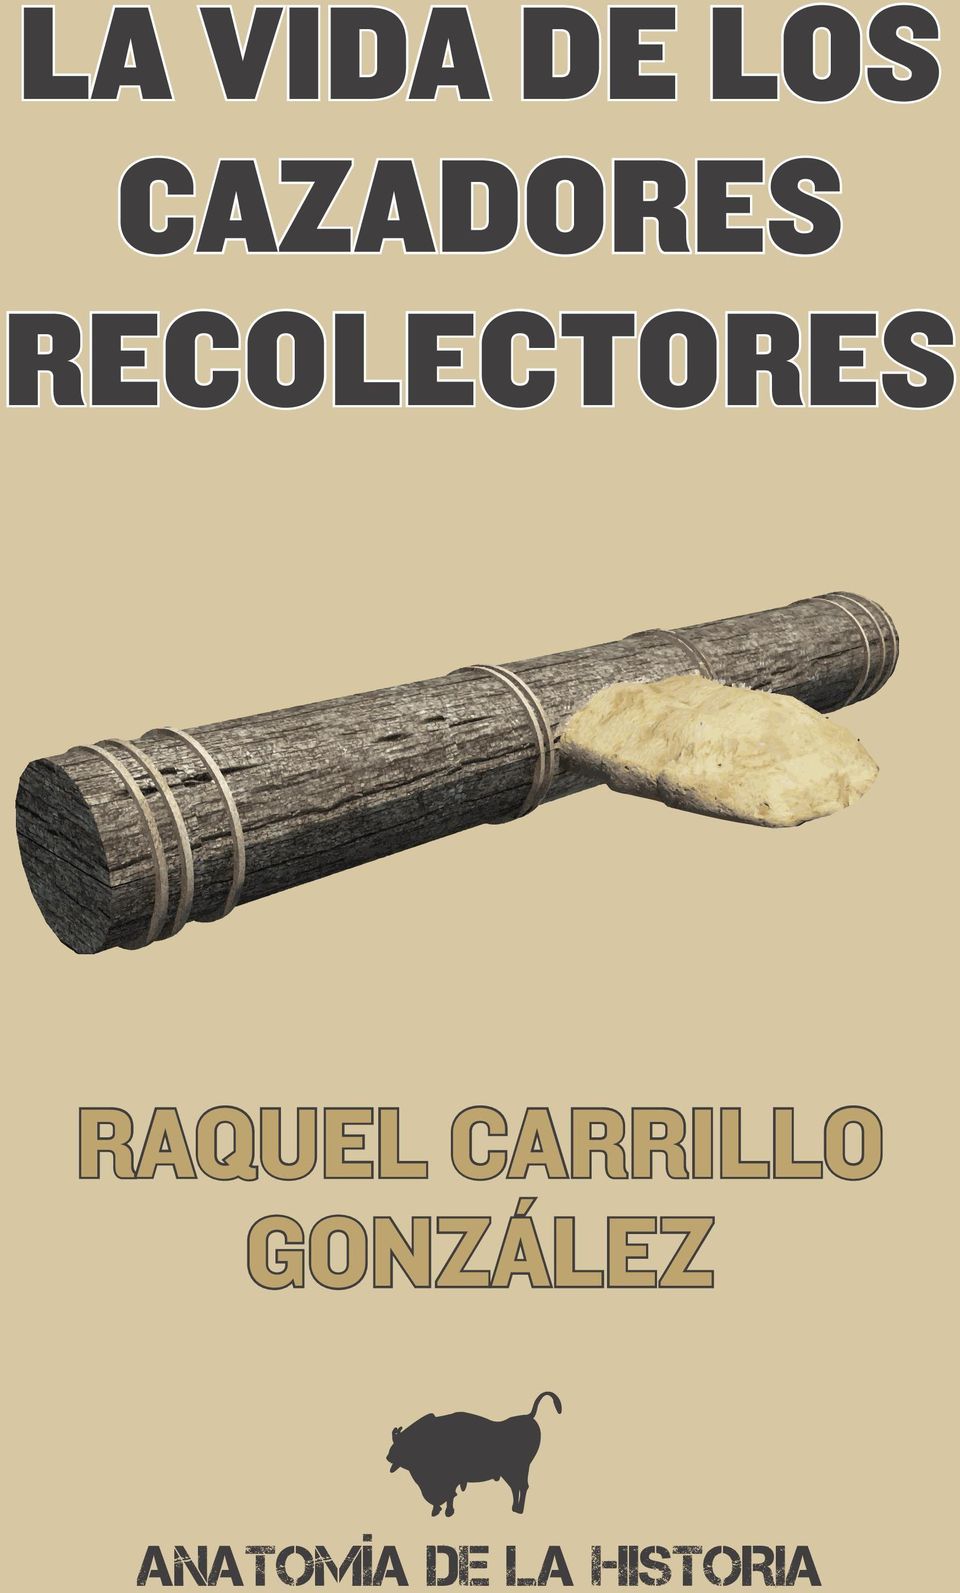 RECOLECTORES RAQUEL